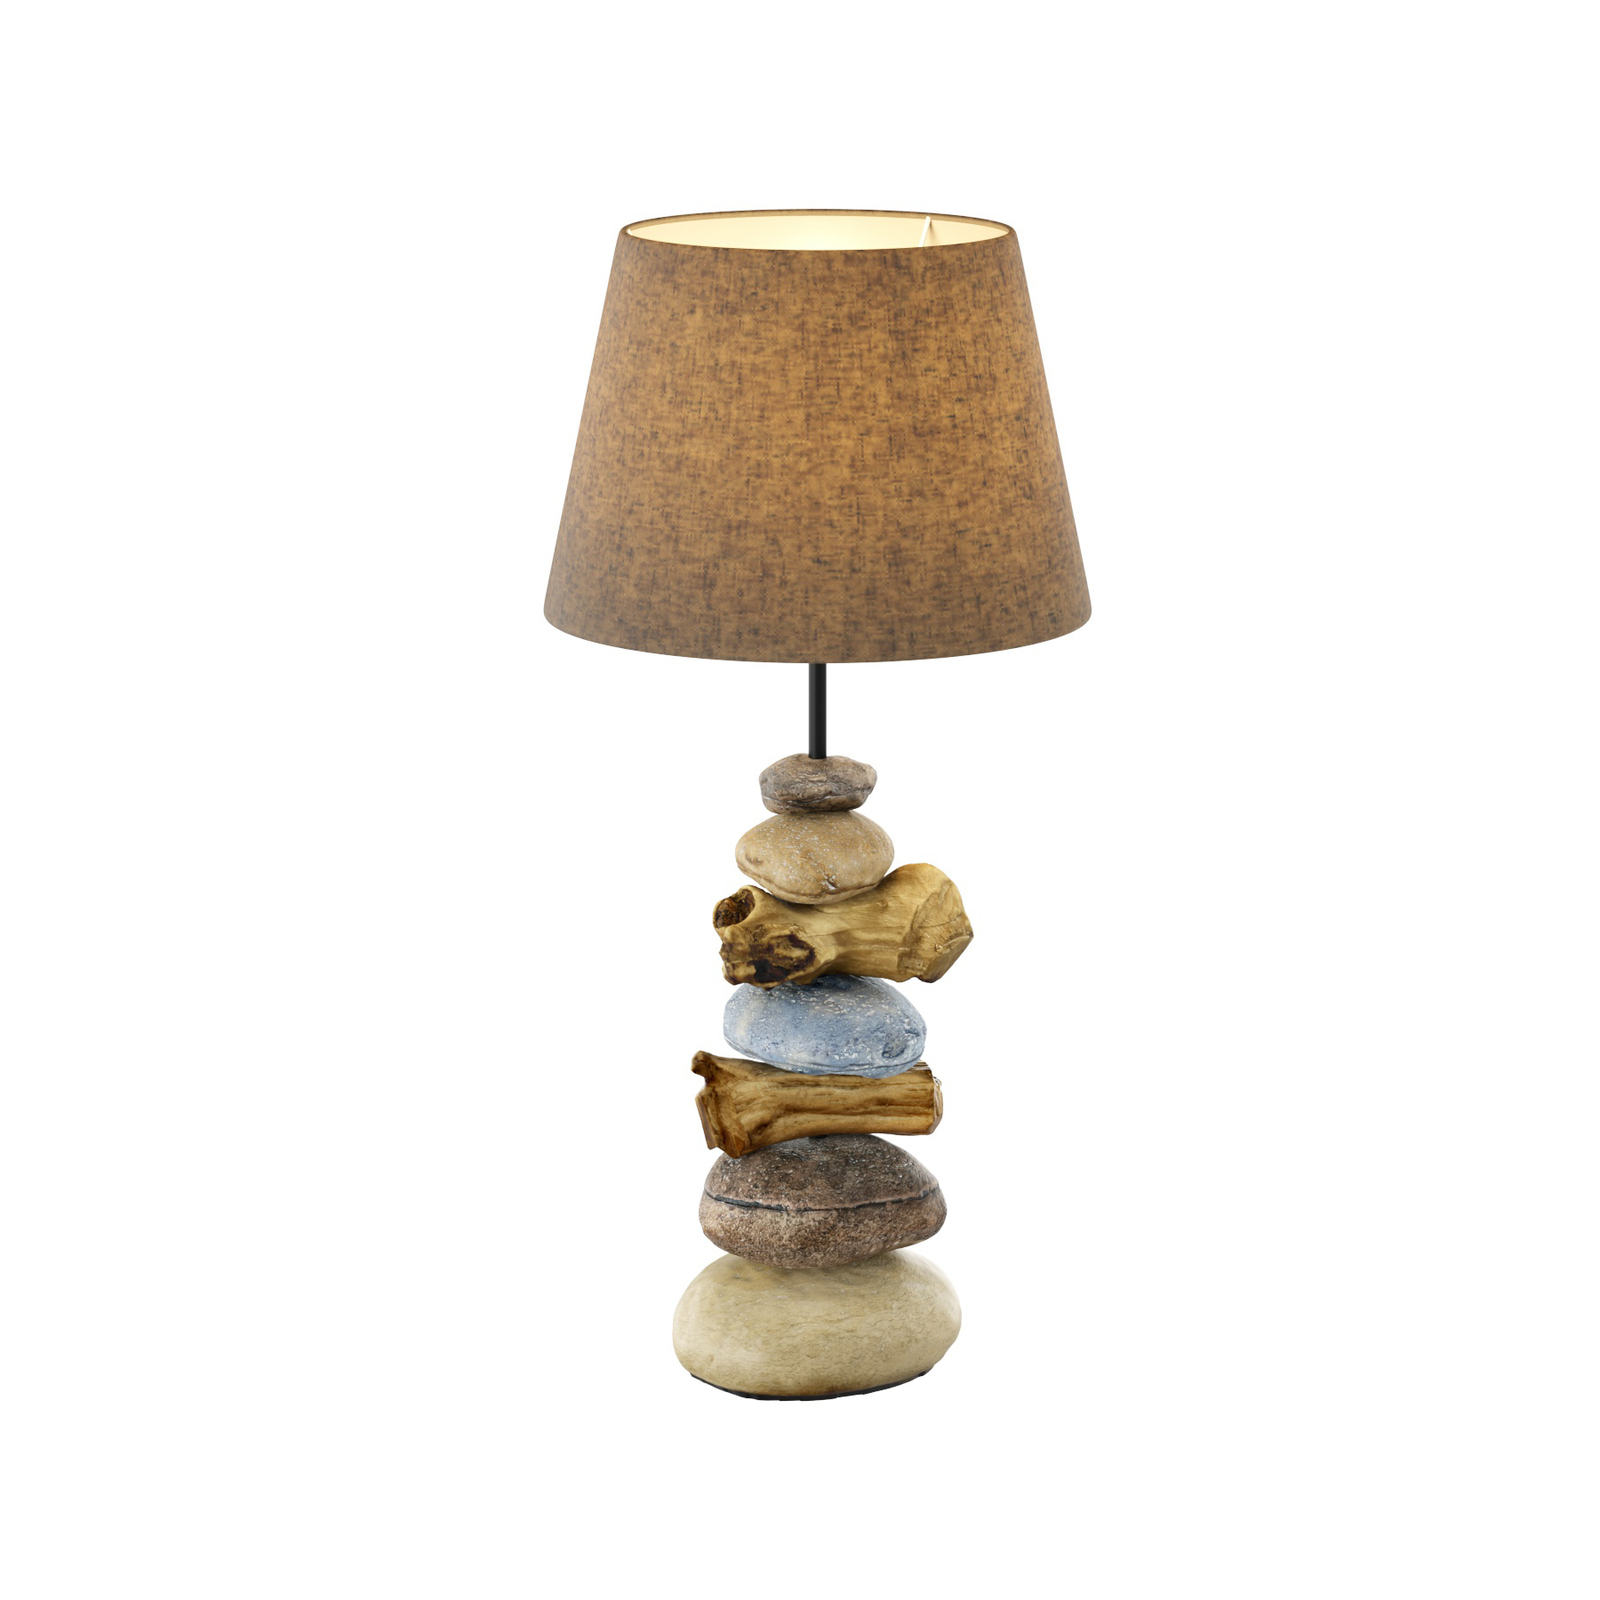 Lampa stołowa Vera, klosz z tkaniny i kamień, 55cm